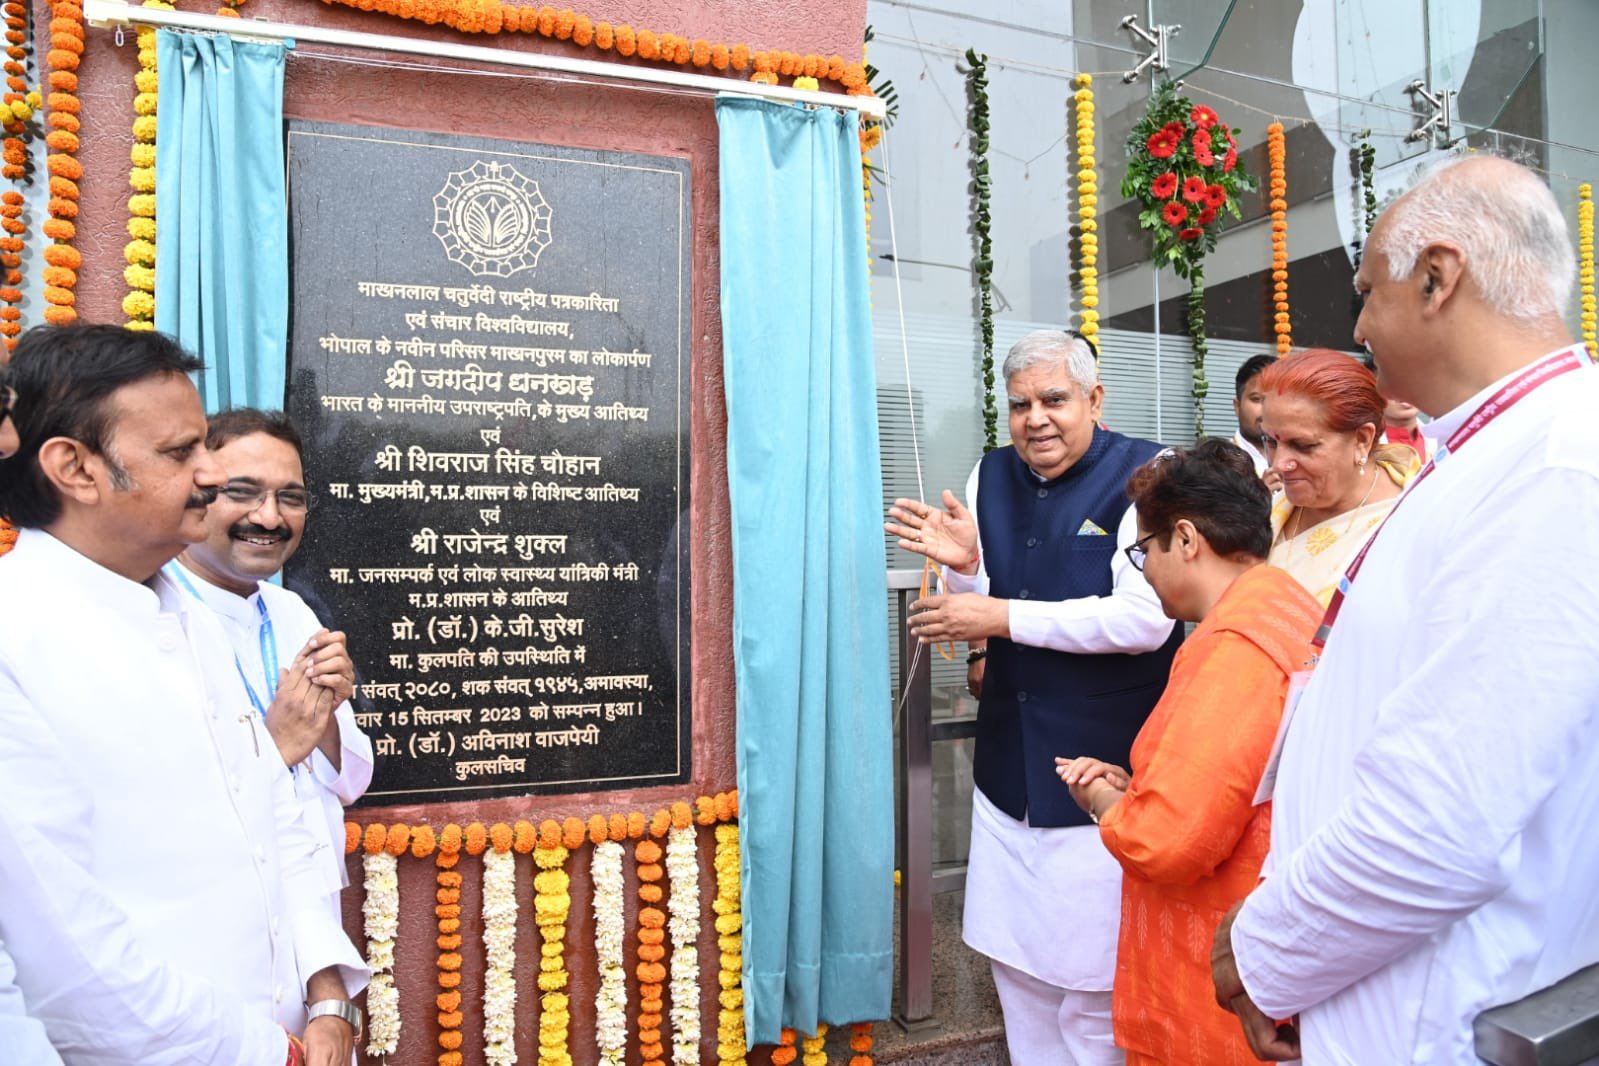 The Vice-President, Shri Jagdeep Dhankhar inaugurating the New Campus of Makhanlal Chaturvedi Rashtriya Patrakarita Evam Sanchar Vishwavidyalaya in Bhopal, Madhya Pradesh on September 15, 2023.